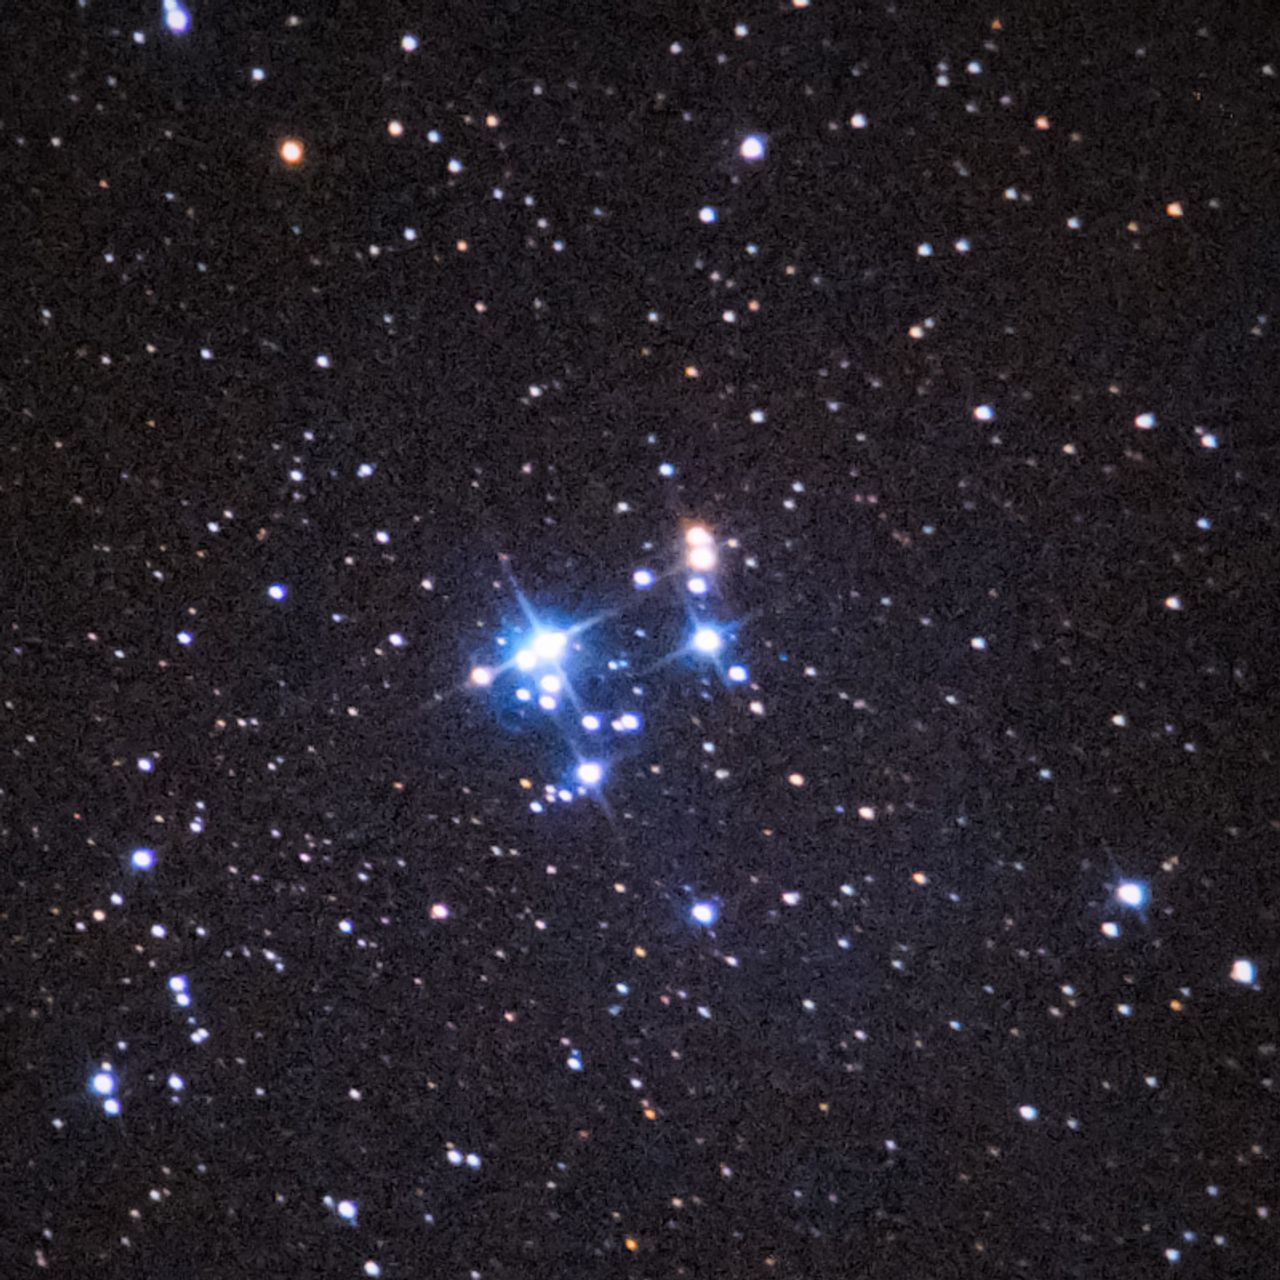 NGC2169